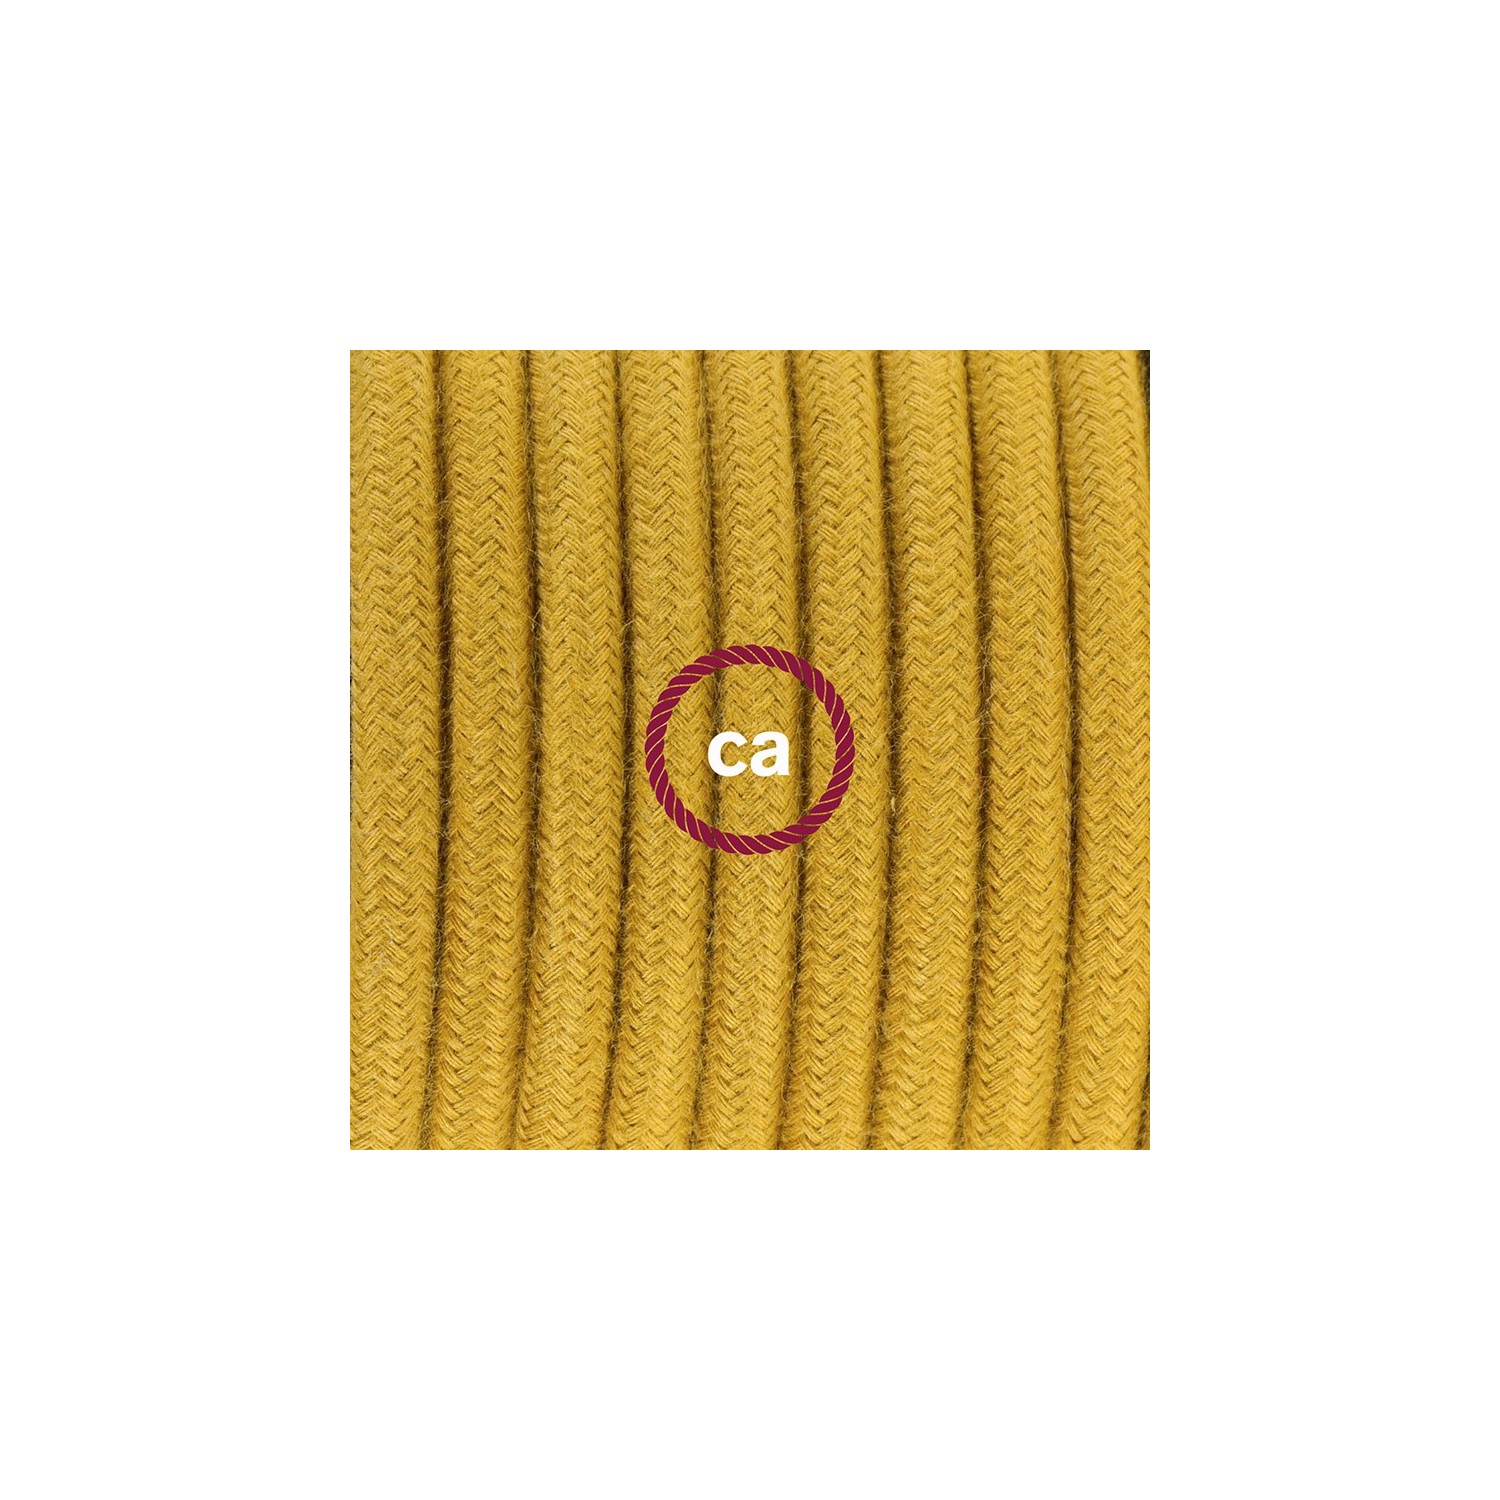 Sladdställ med fotströmbrytare, RC31 Golden Honey Bomull 3 m. Välj färg på strömbrytare och kontakt